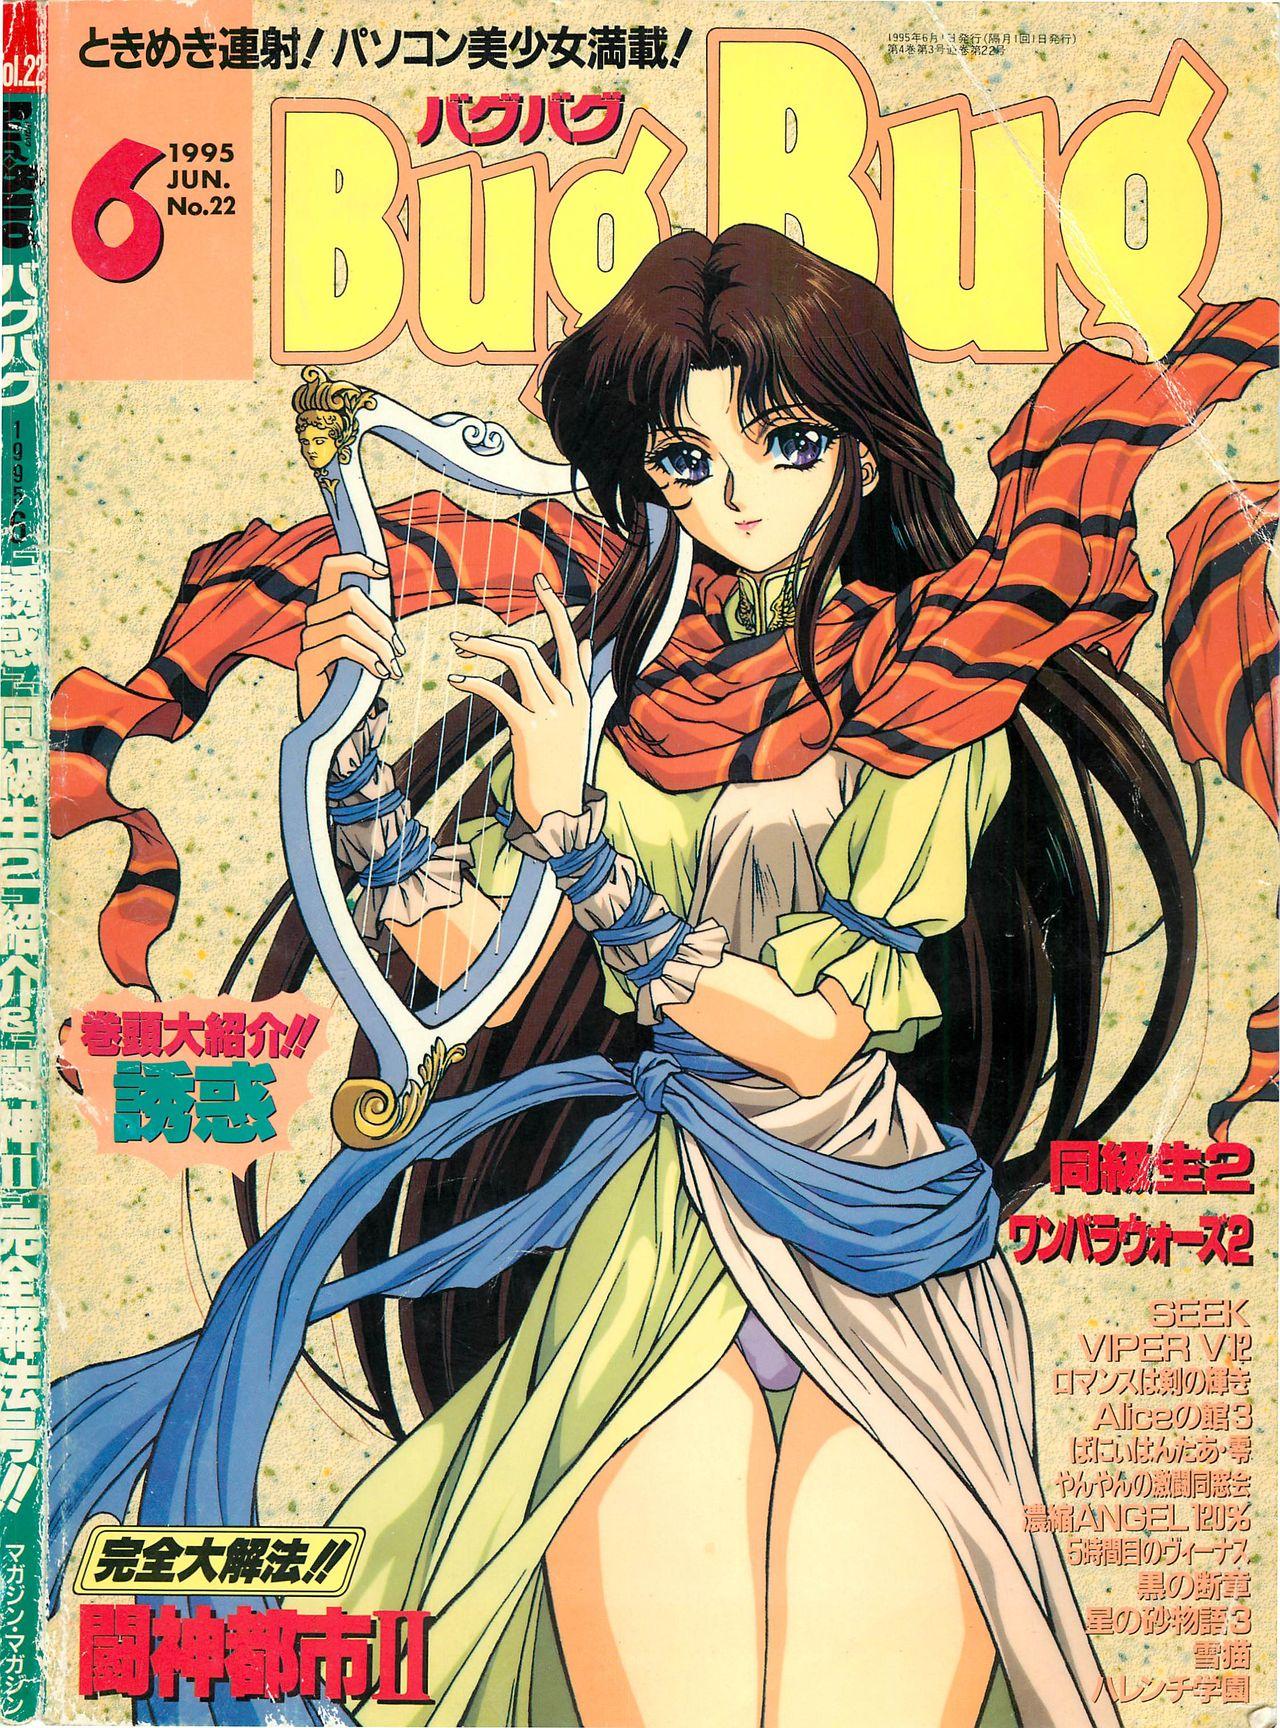 BugBug 1995-06 0